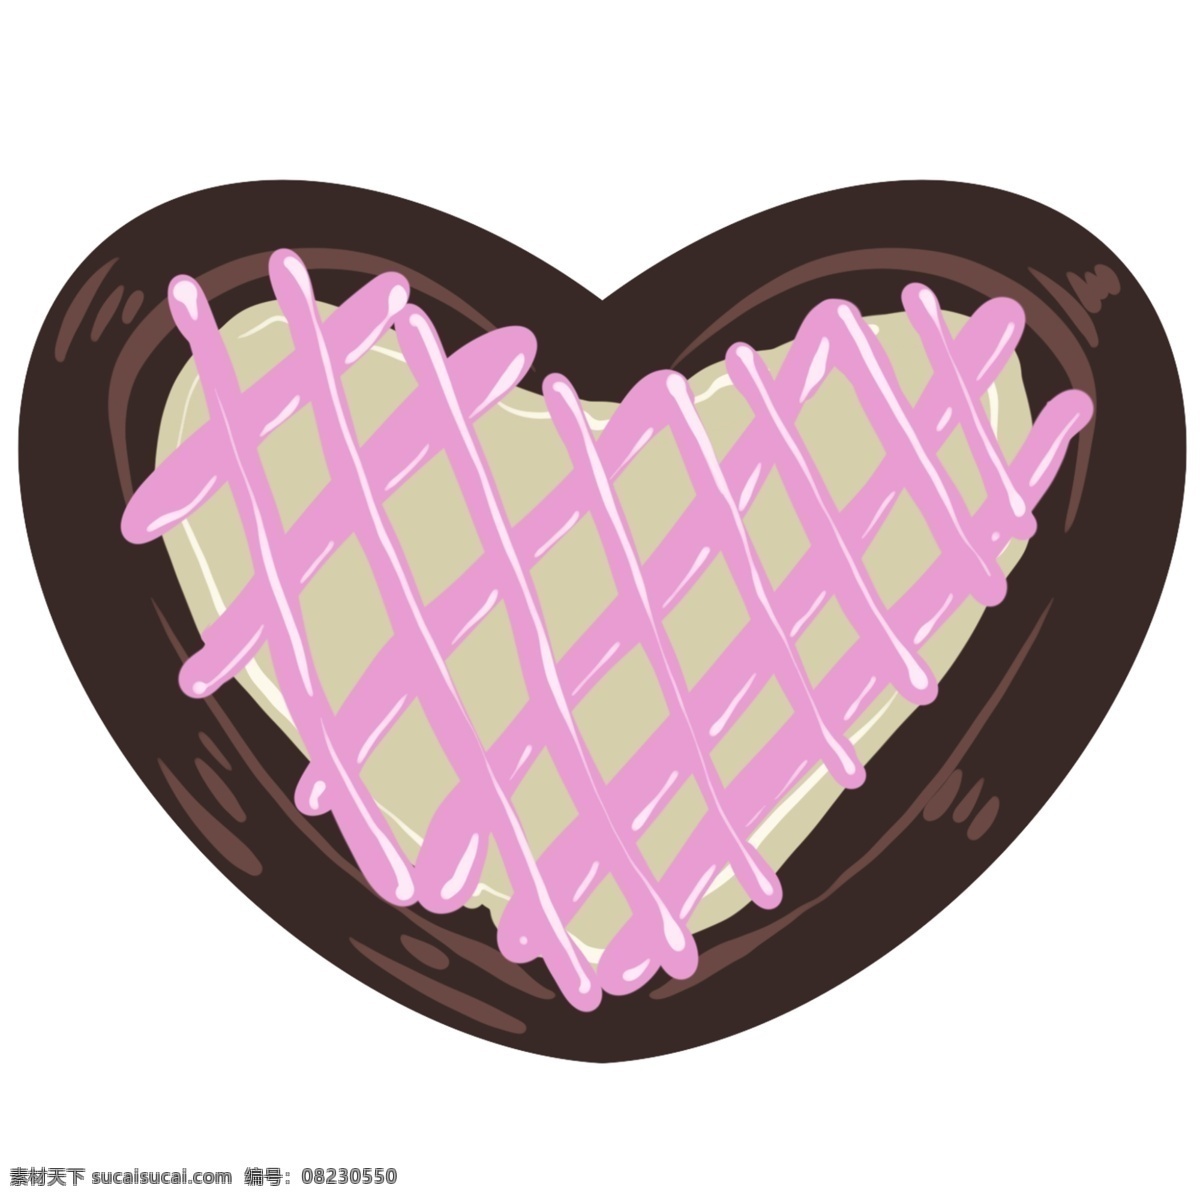 粉色 心形 饼干 插画 心形的饼干 卡通插画 心形插画 心形产品 心形物品 心形小物 巧克力饼干